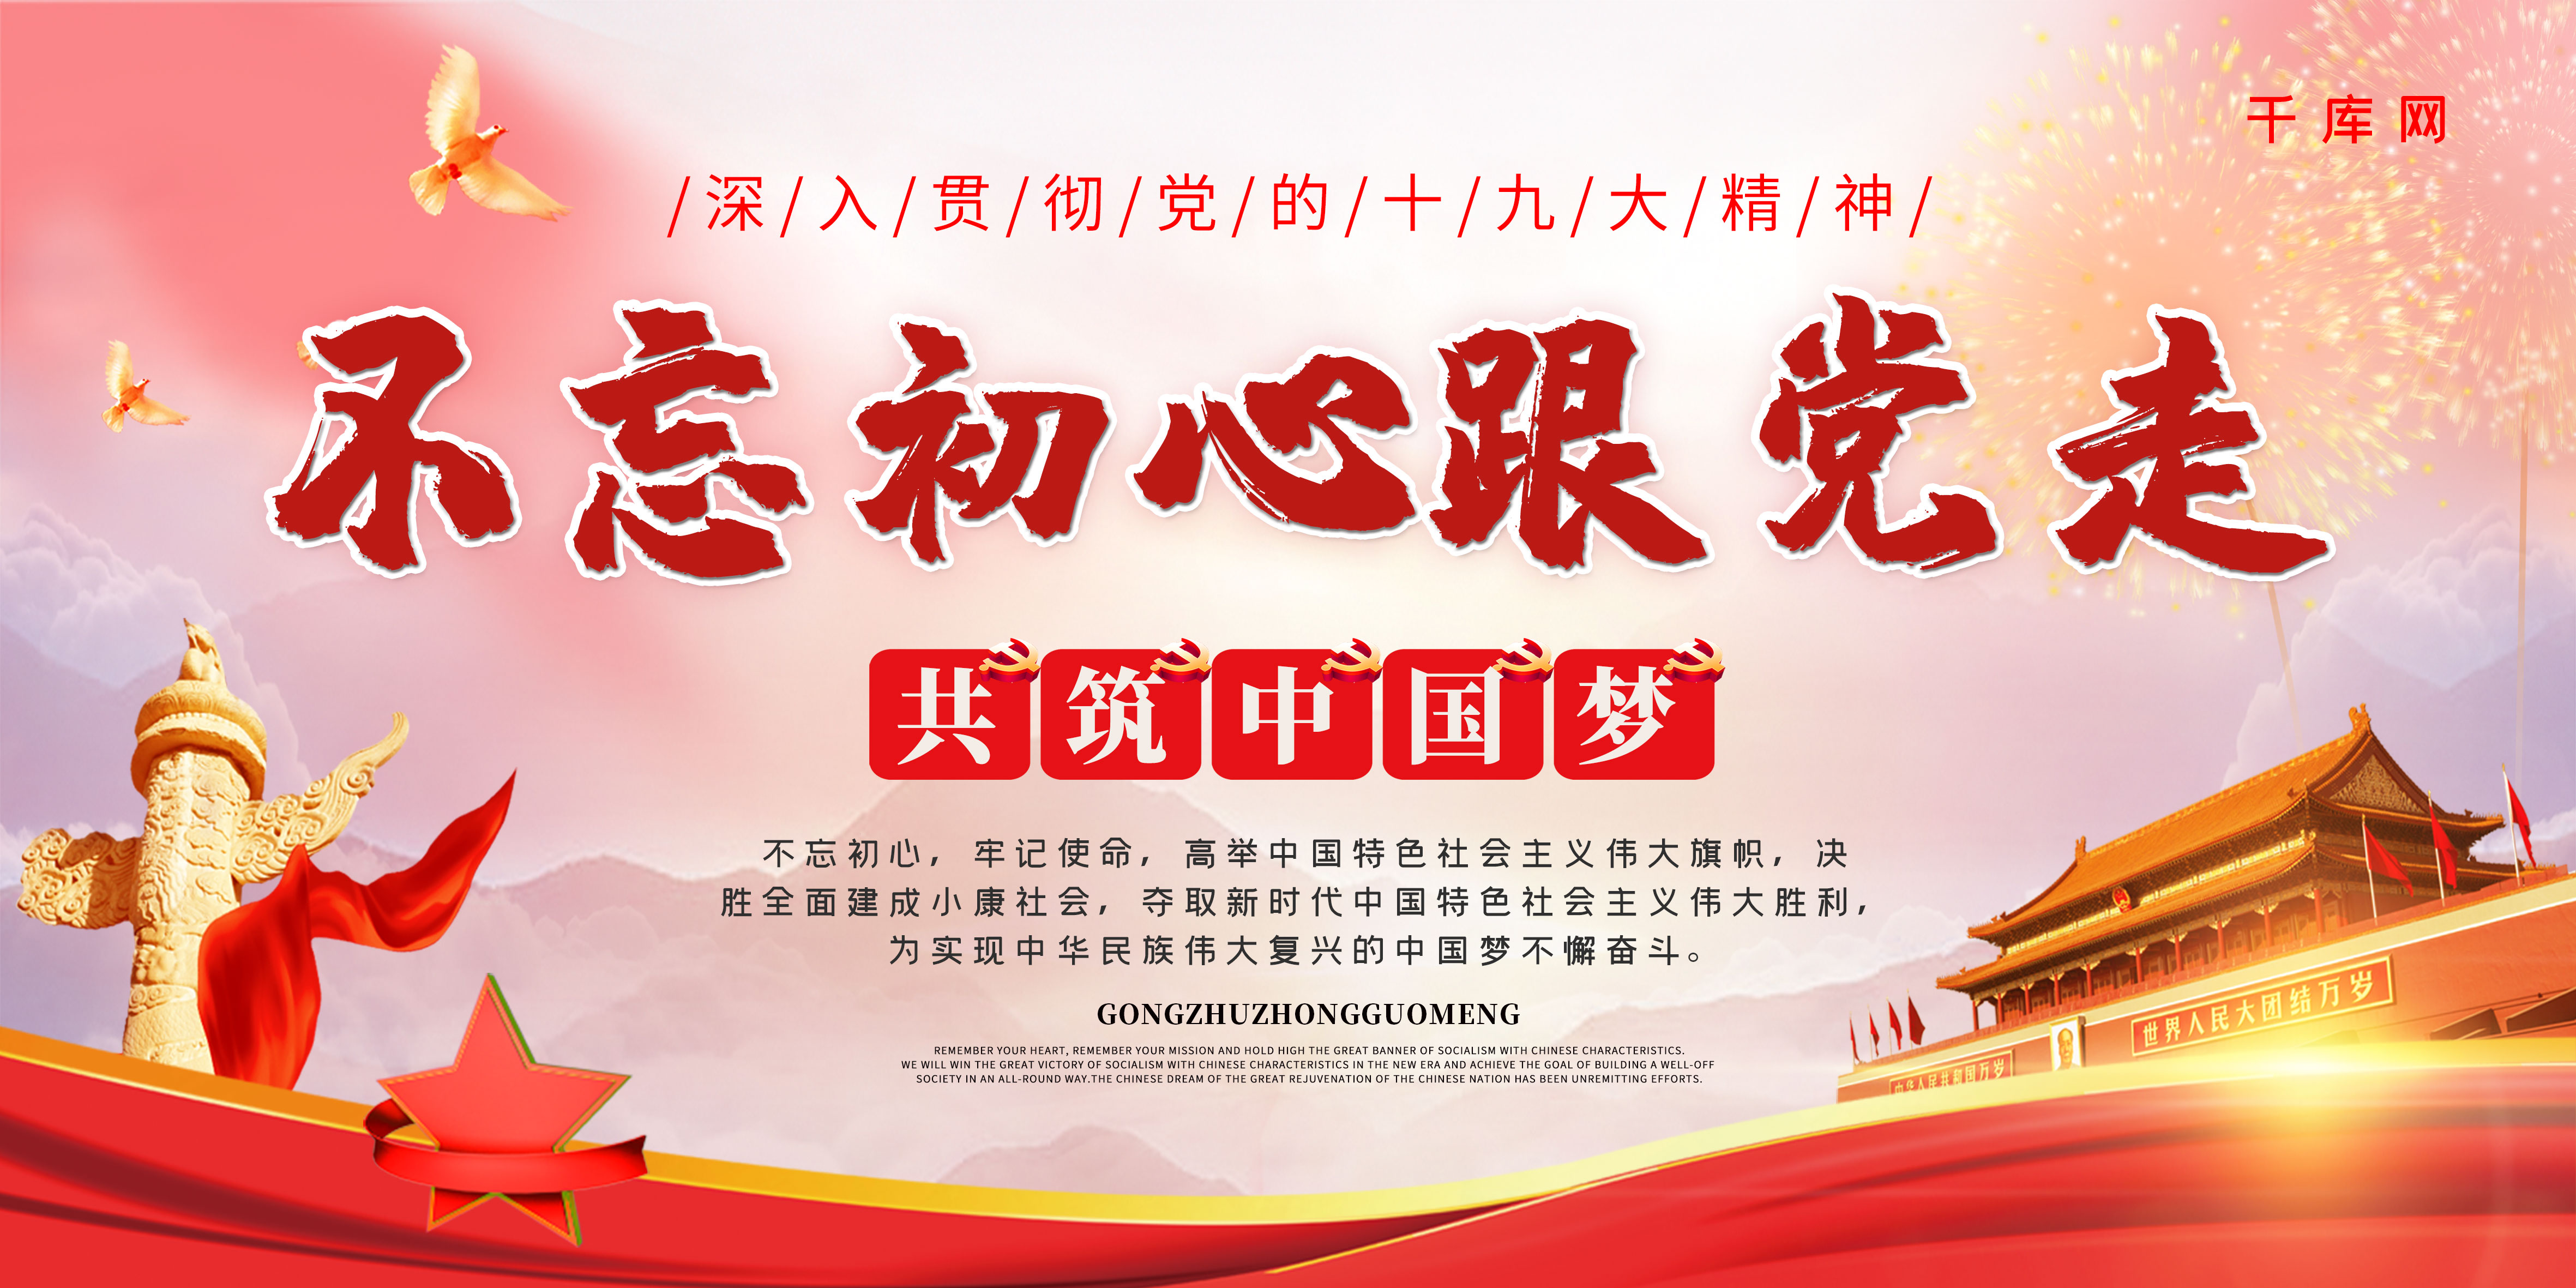 简约红色大气党建不忘初心跟党走中国梦宣传展板图片